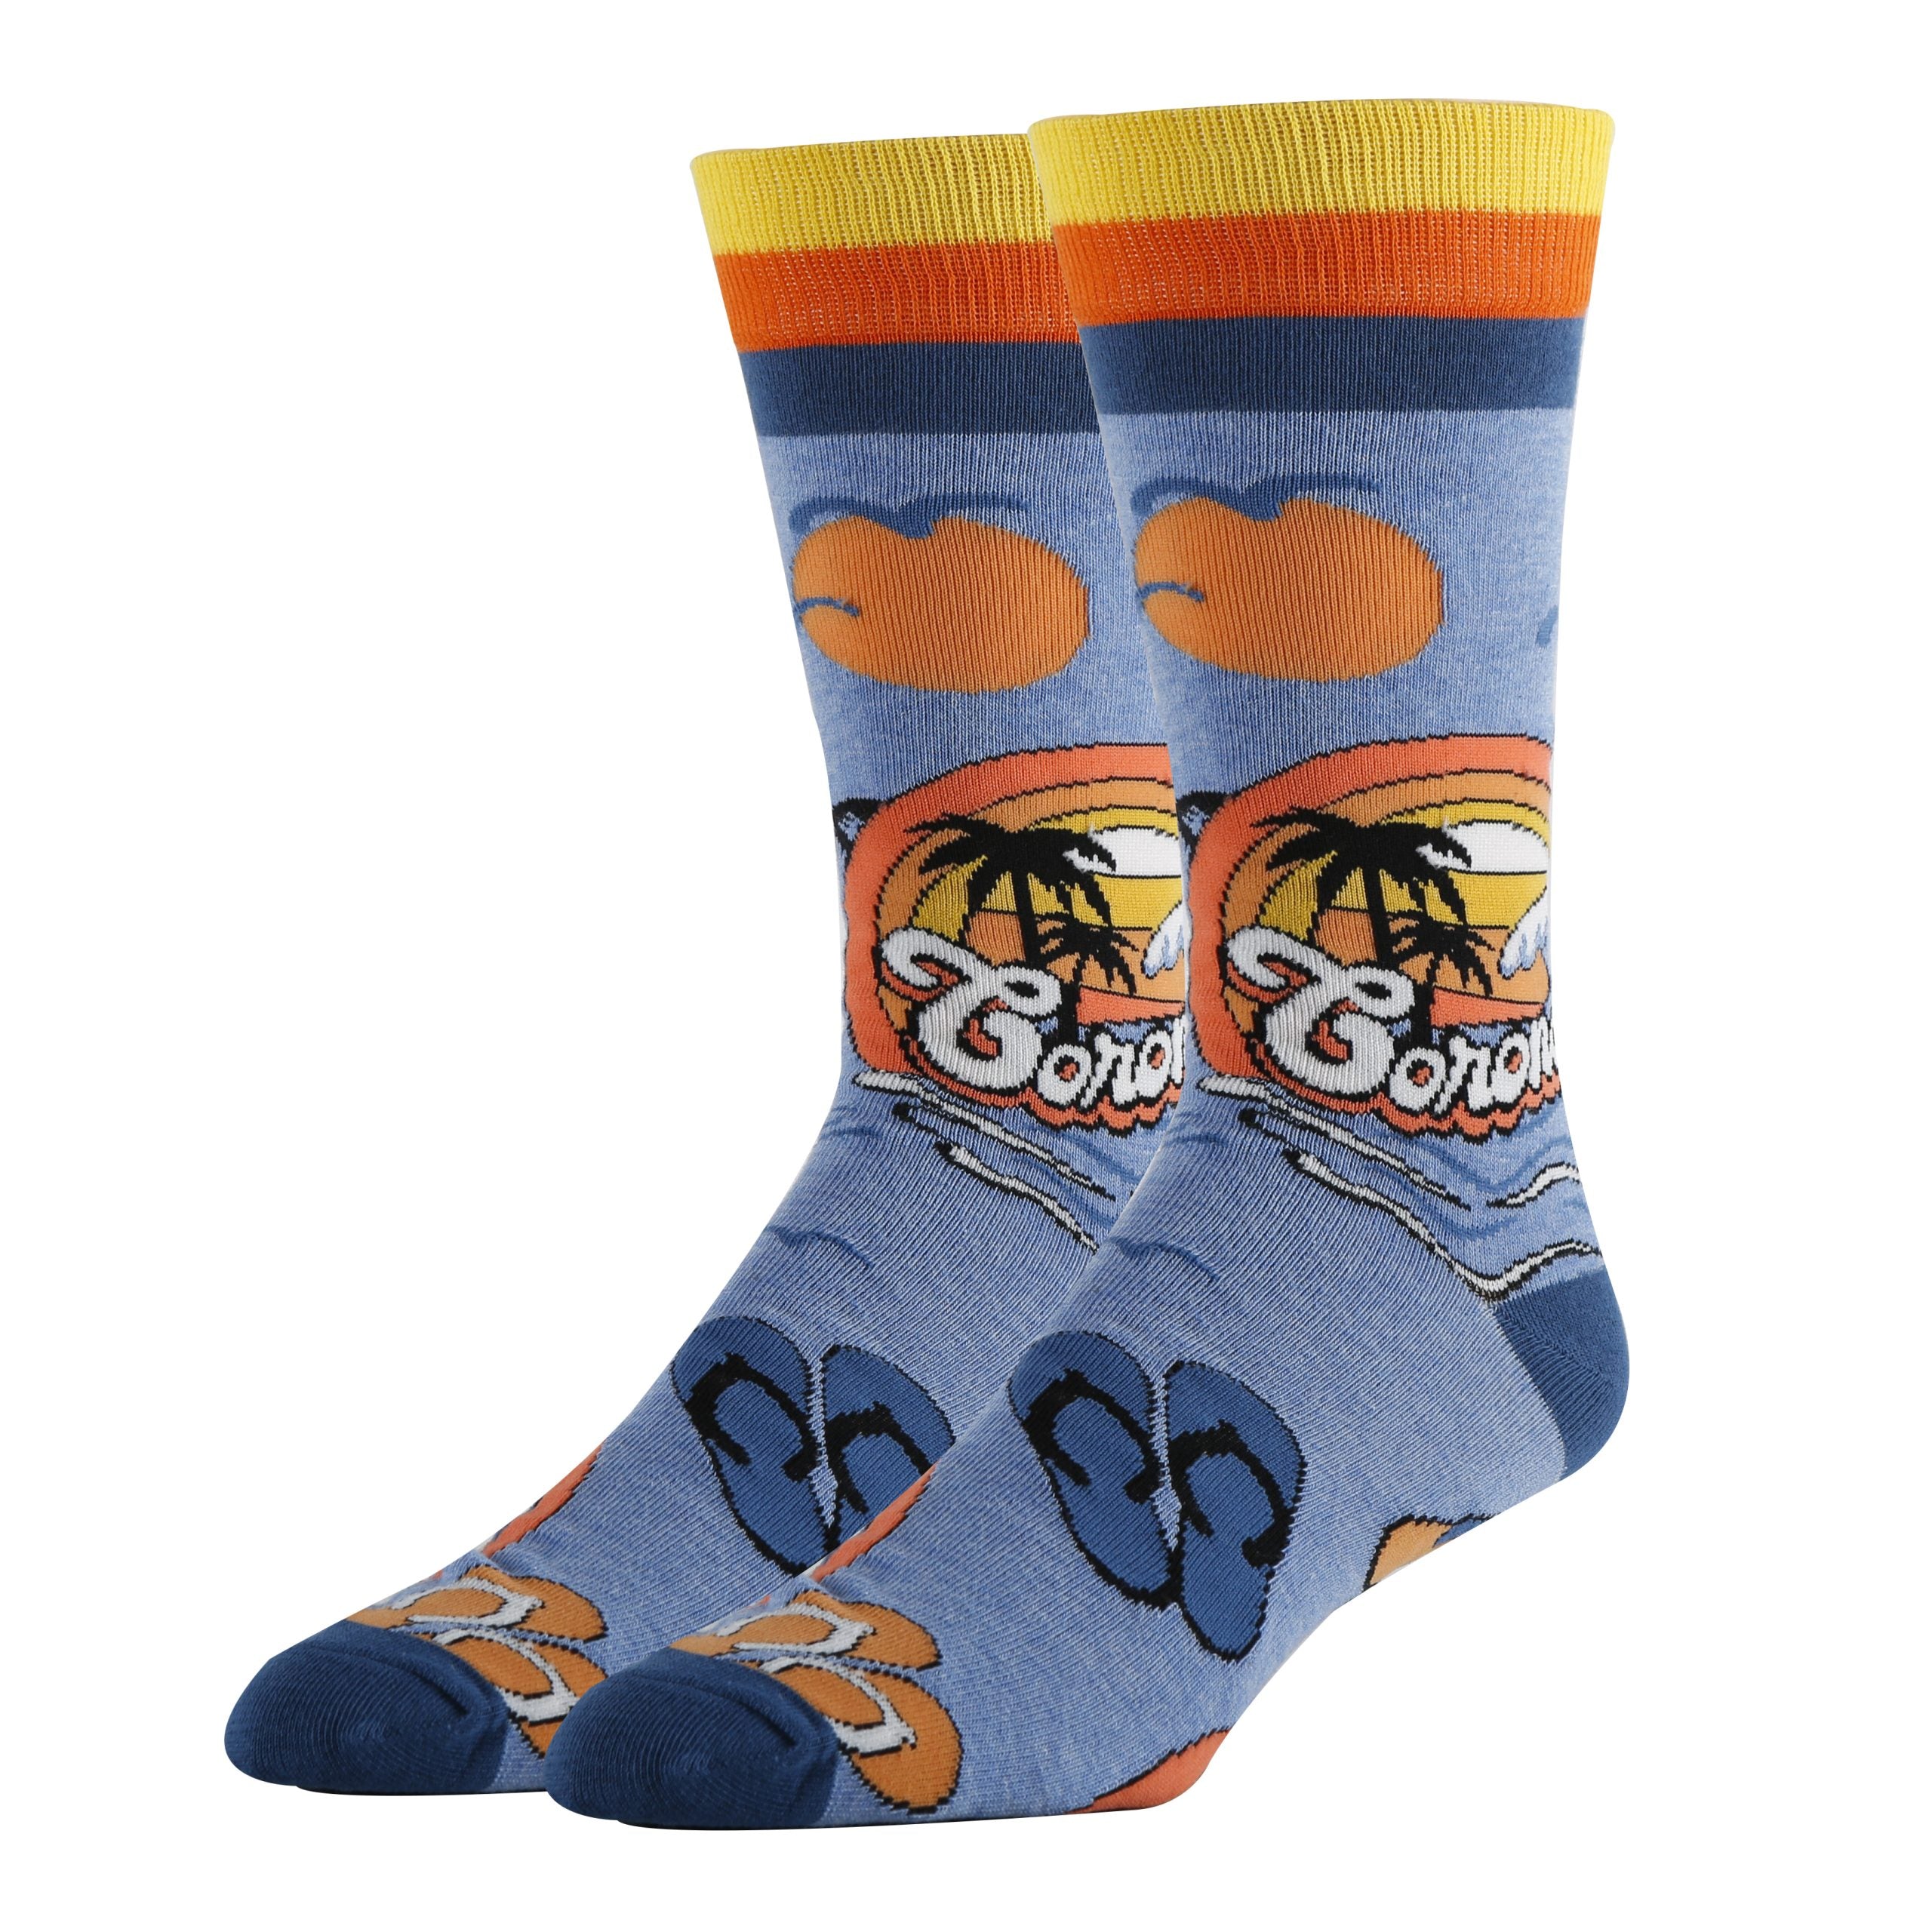 Coronado Socks | Funny Crew Socks for Men